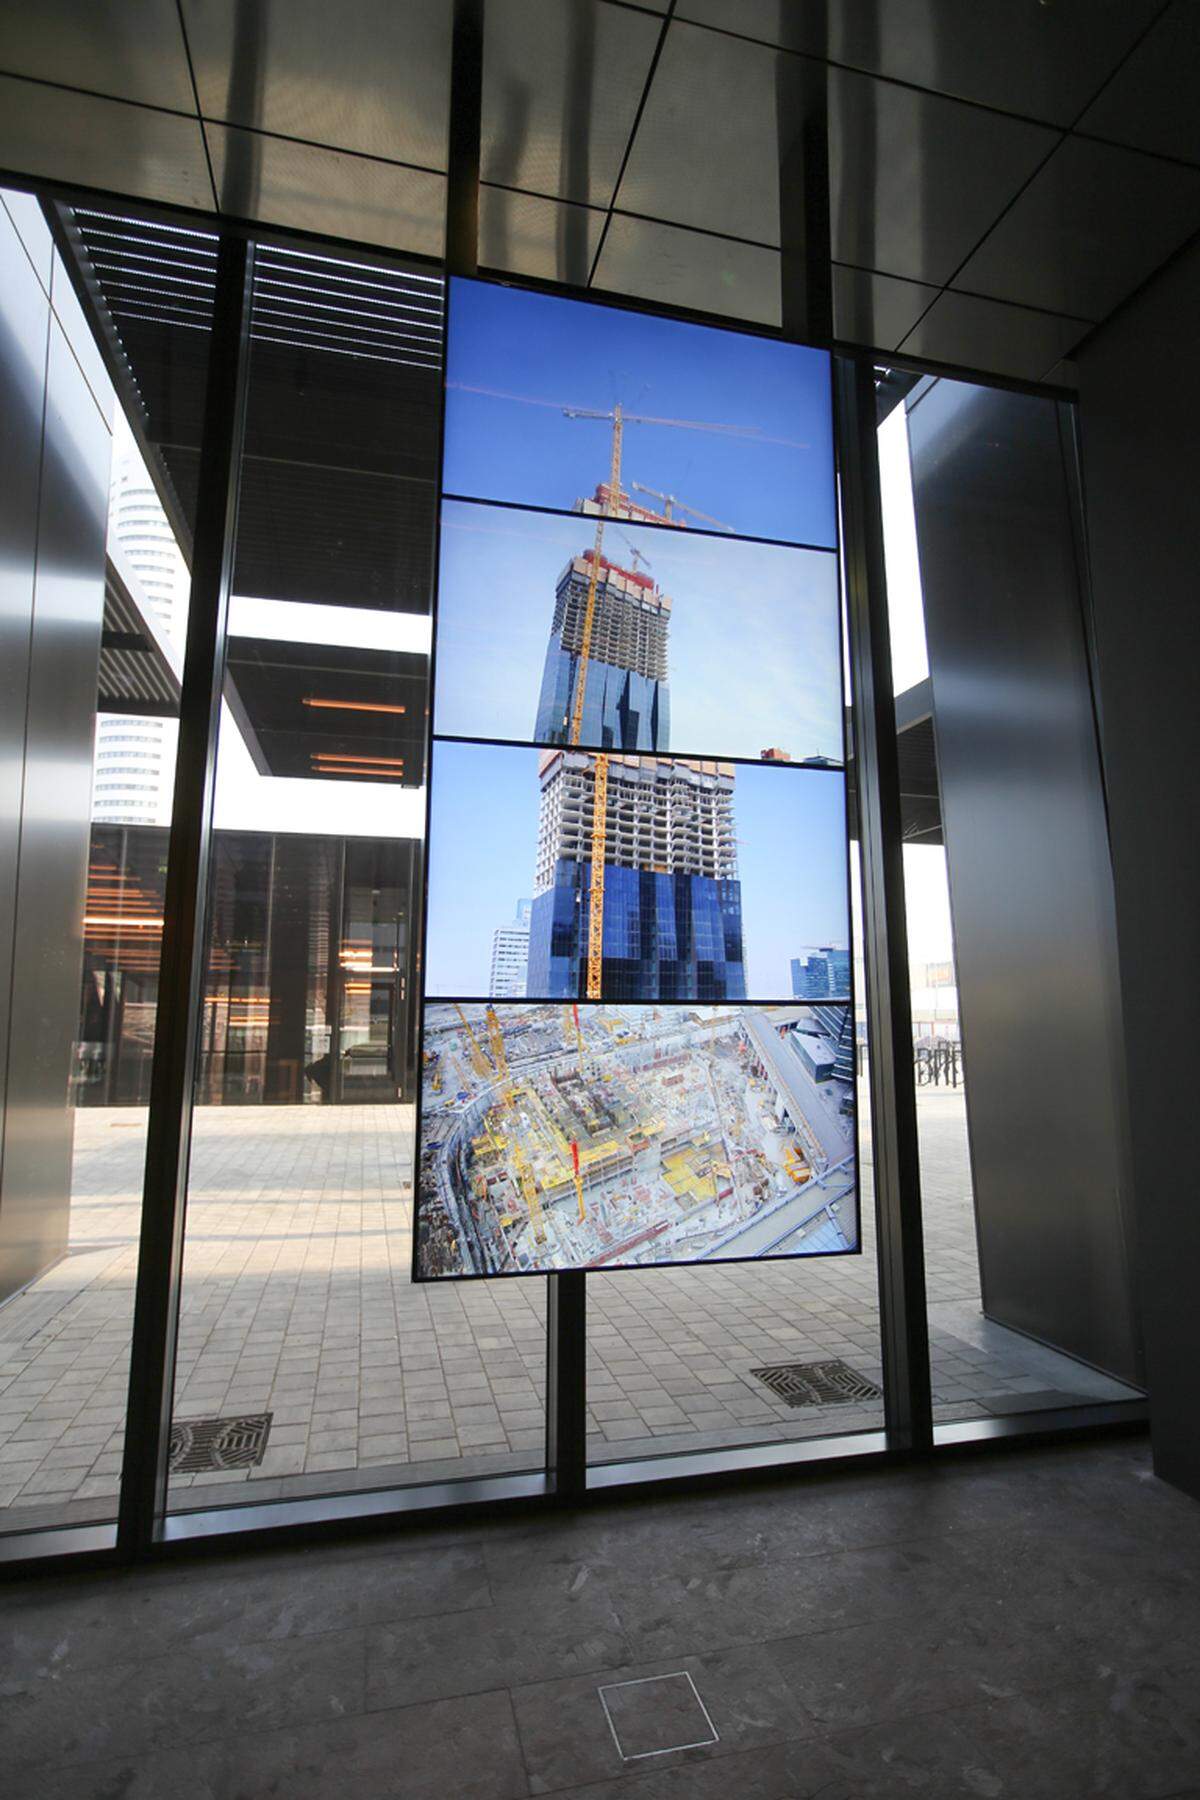 In der Eingangshalle sind Bildschirme montiert, die den Bau des DC Tower im Zeitraffer zeigen.